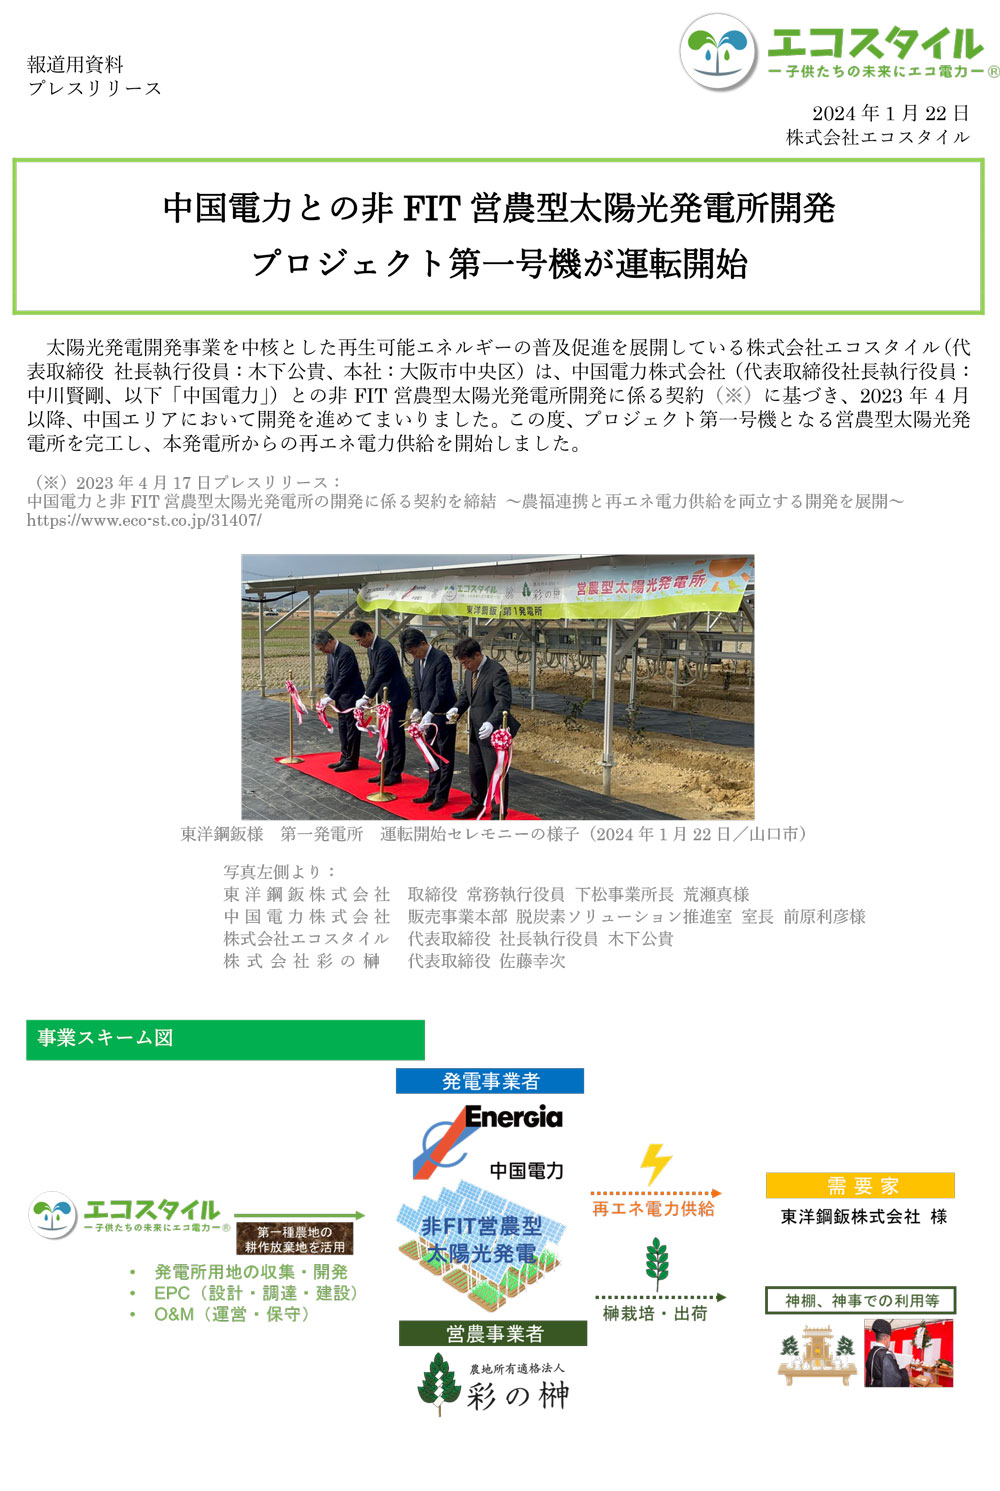 中国電力との非FIT営農型太陽光発電所開発 プロジェクト第一号機が運転開始